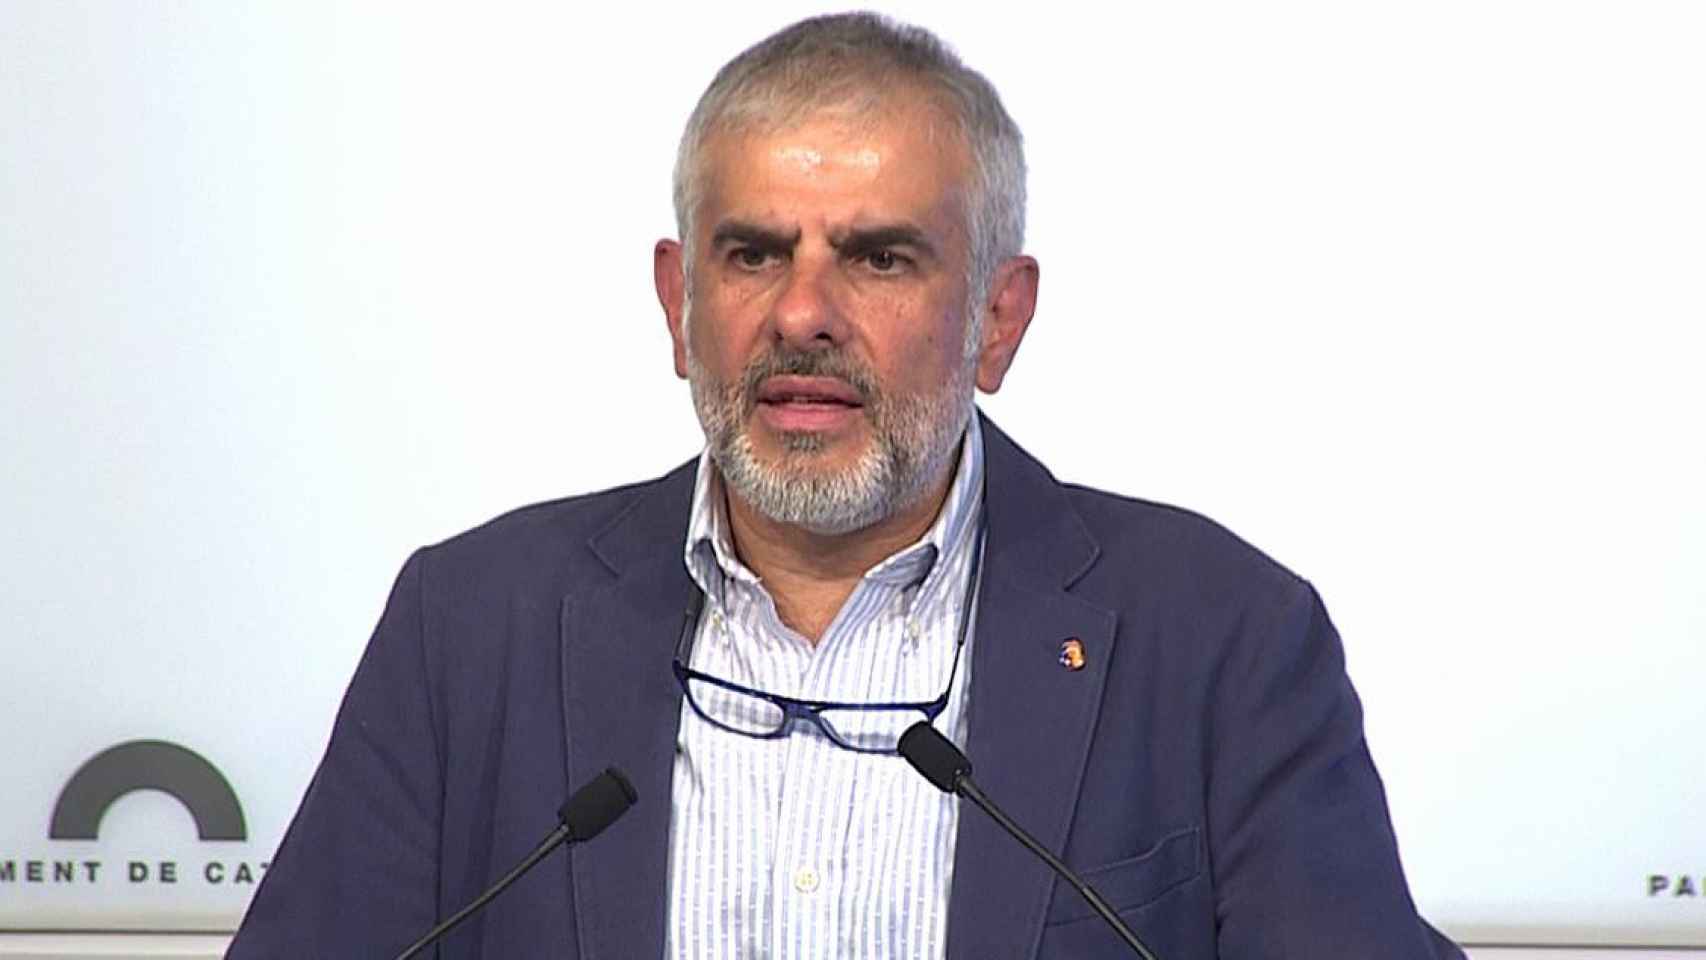 El candidato de Ciudadanos a la presidencia de la Generalitat, Carlos Carrizosa / EP